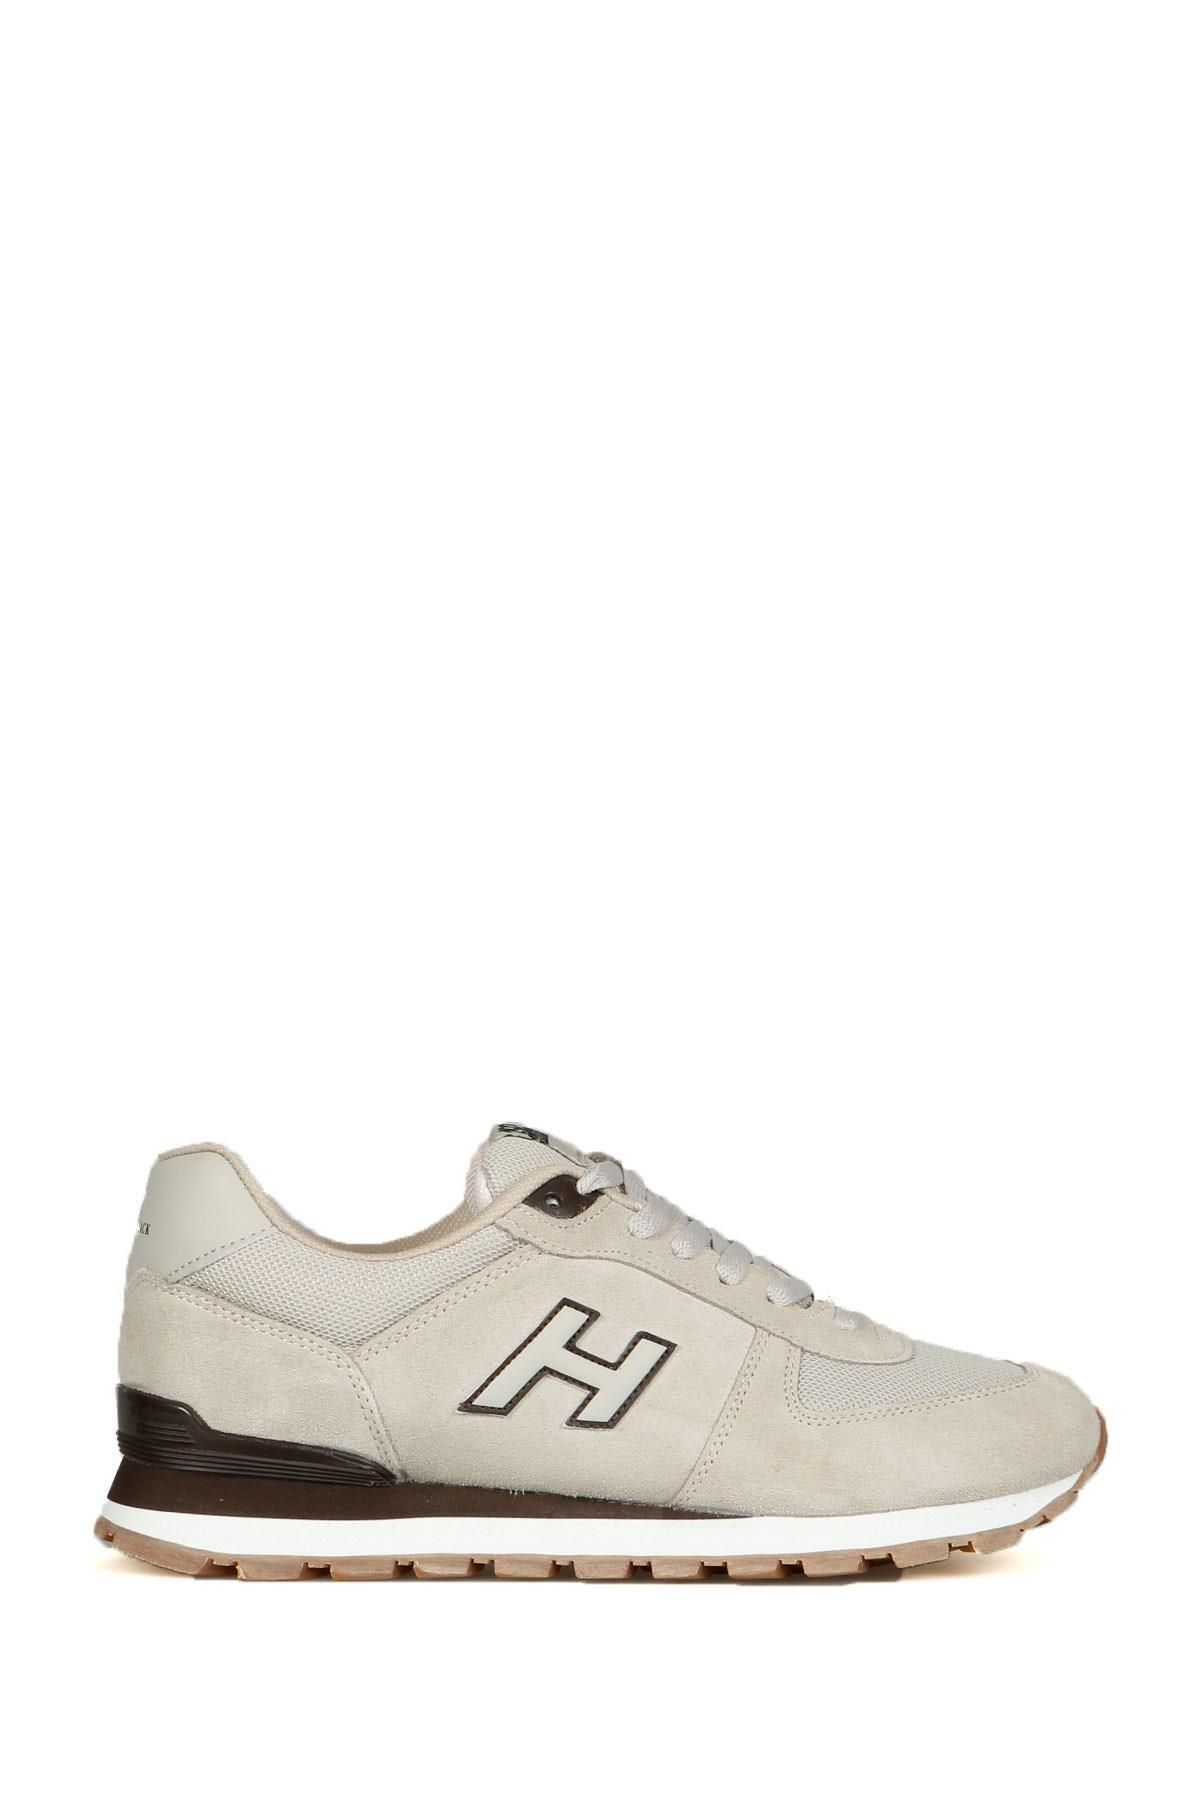 Hammer Jack Büyük Ayak Spor Ayakkabı Peru 102-19250-MB